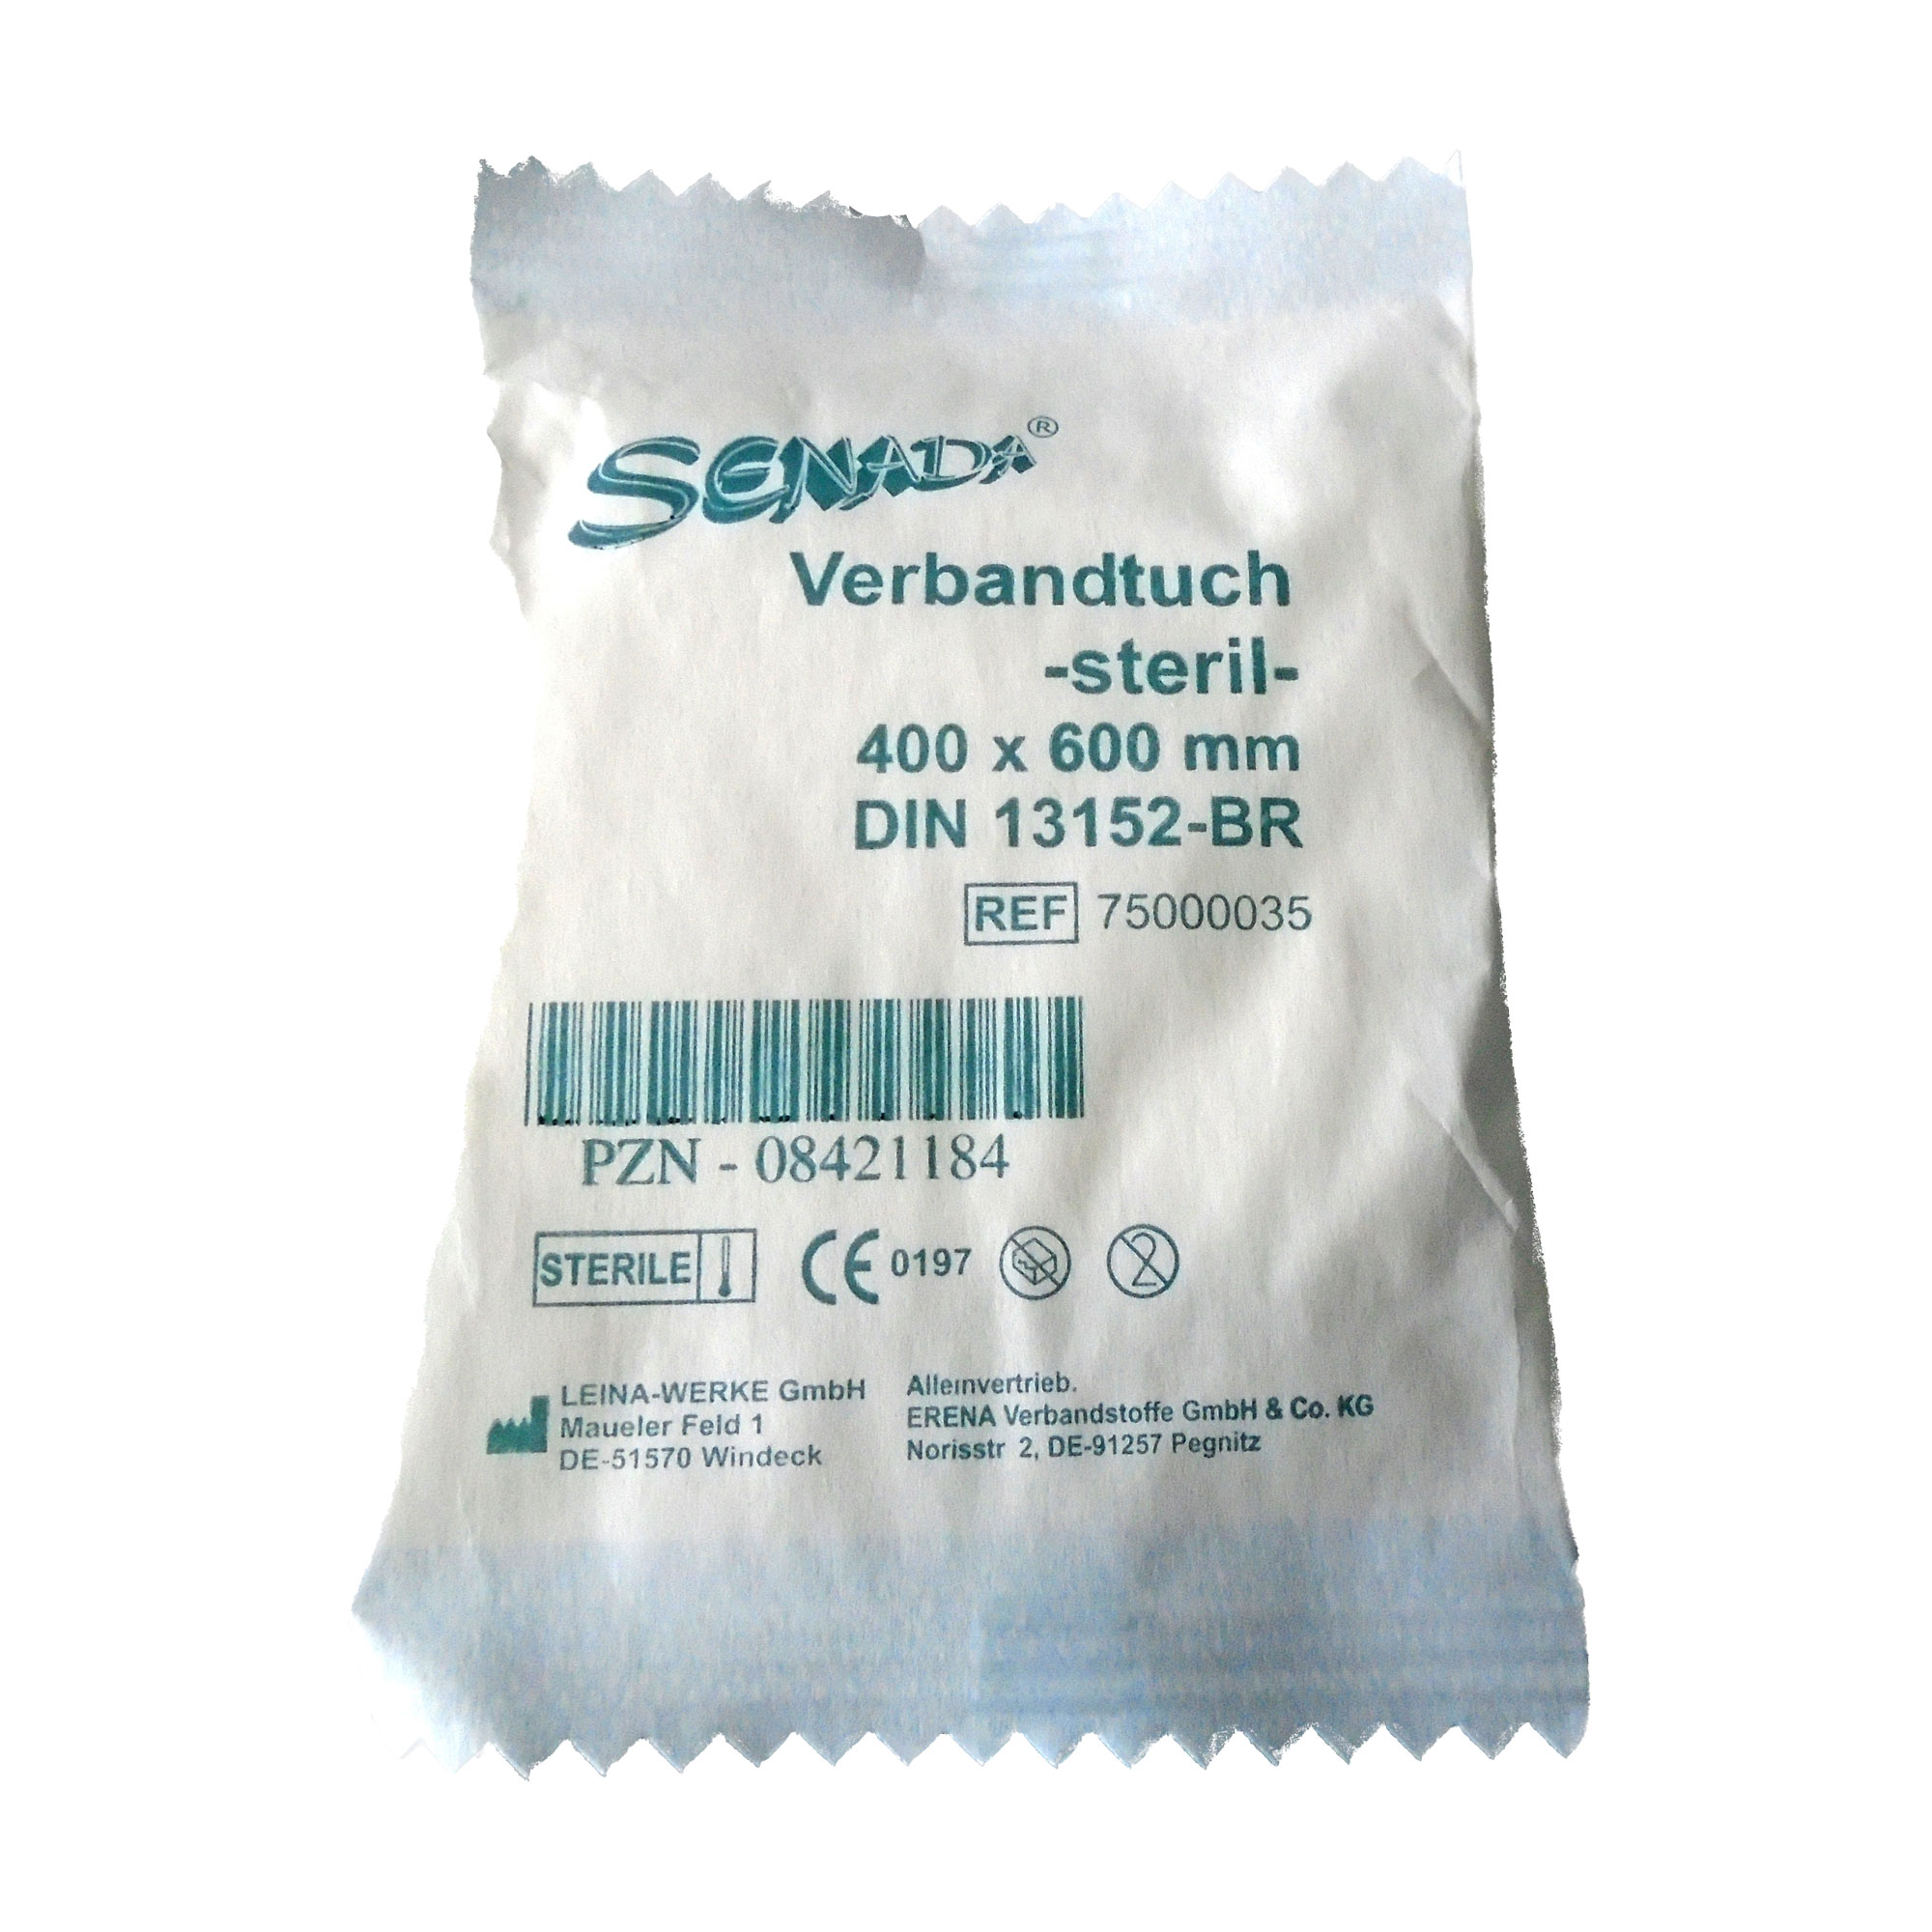 Für sterile Verbandtücher, die insbesondere im Erste- Hilfe- Bereich verwendet werden.